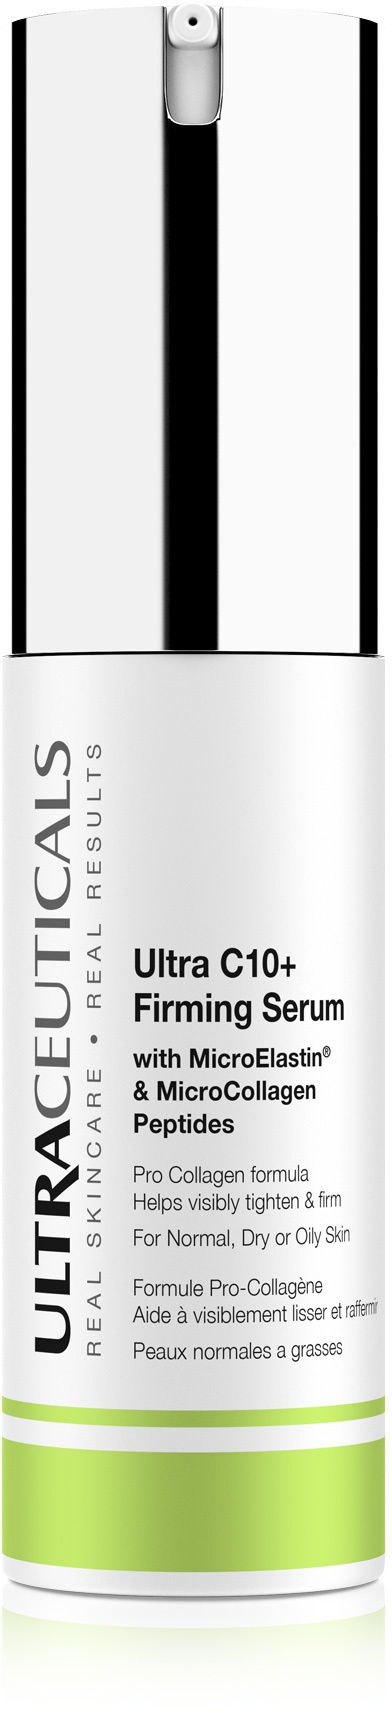 Ultraceuticals Ultra C10+ Firming Serum